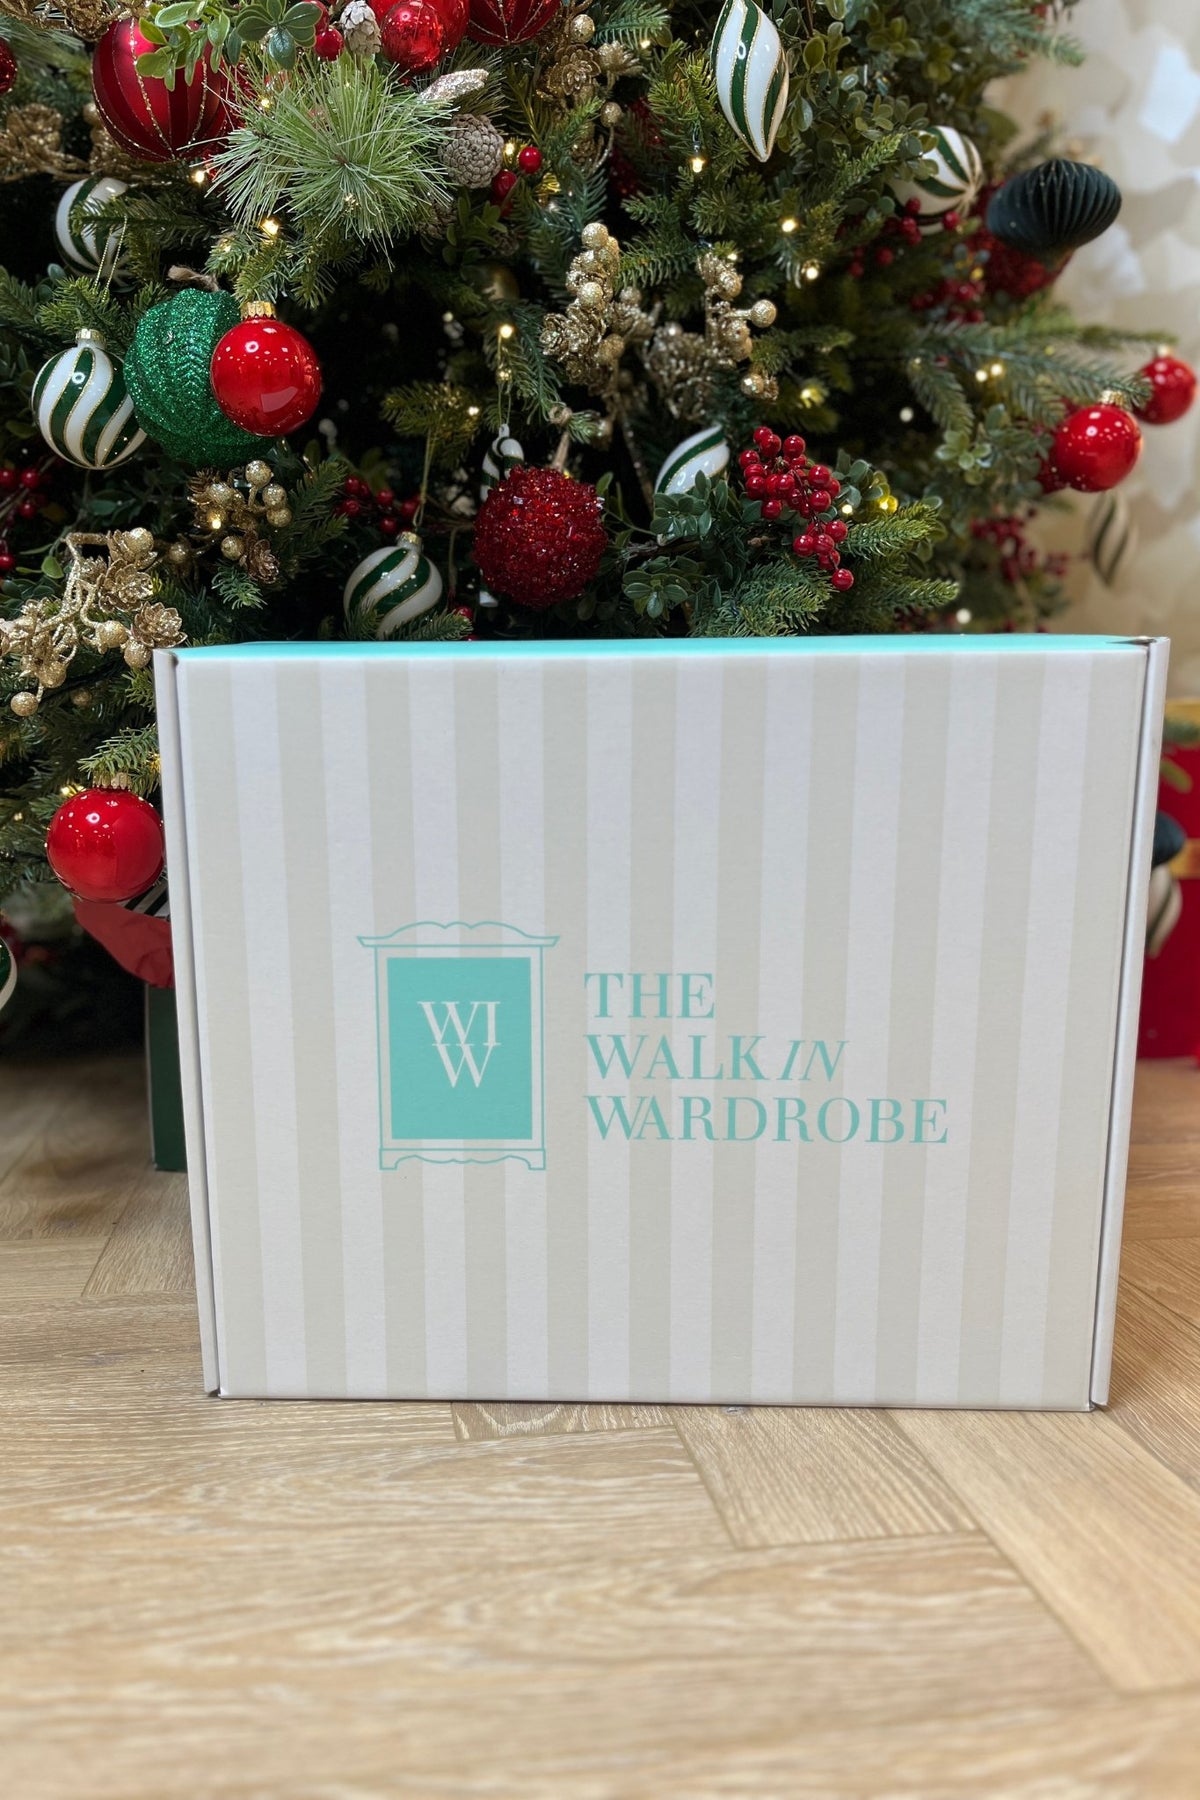 WIW Luxury Packaging - The Walk in Wardrobe